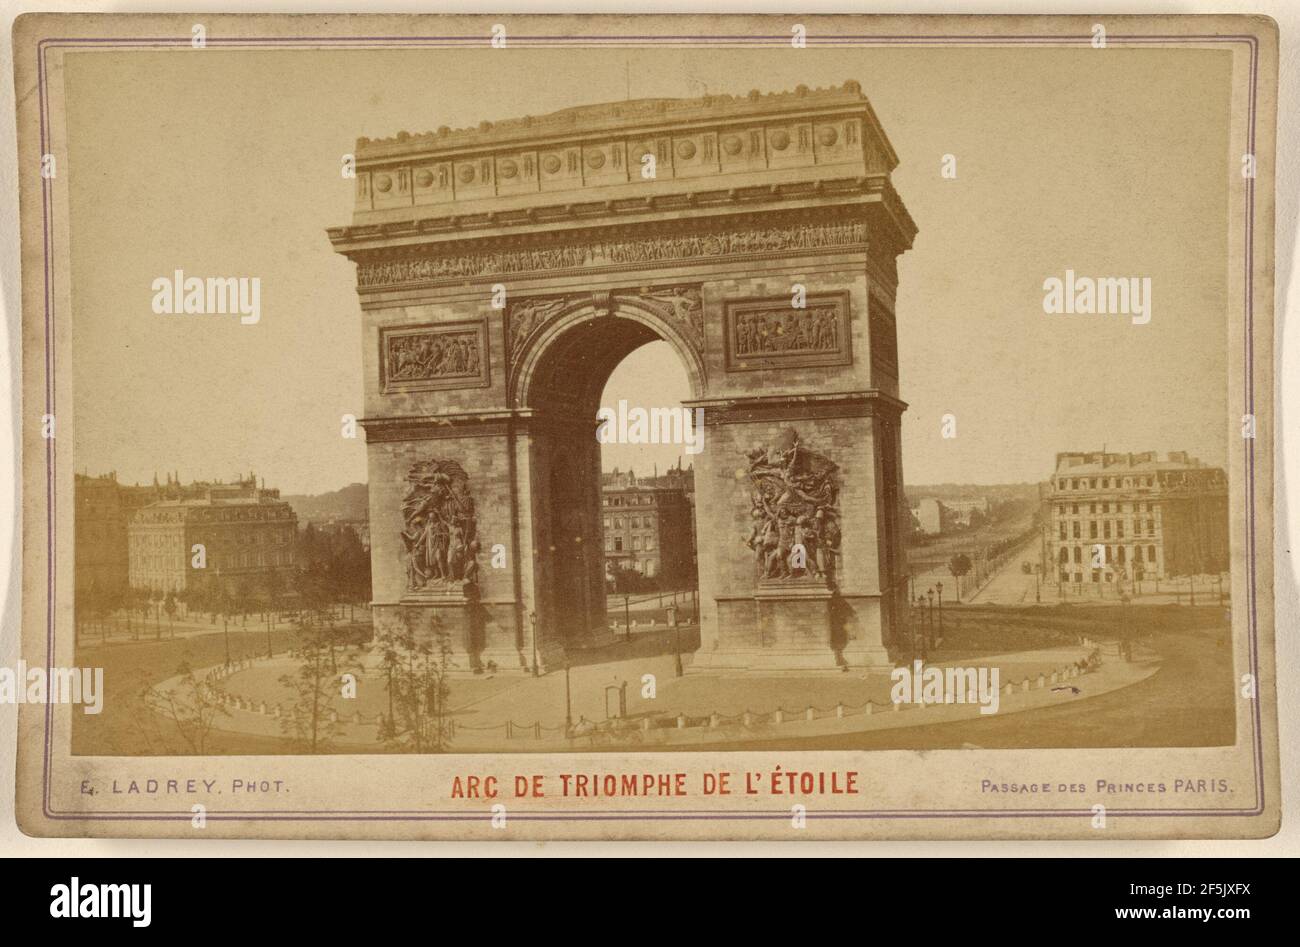 Arc de Triomphe de l'Etoile. Ernest Ladrey (French, active Paris, France 1860s) Stock Photo